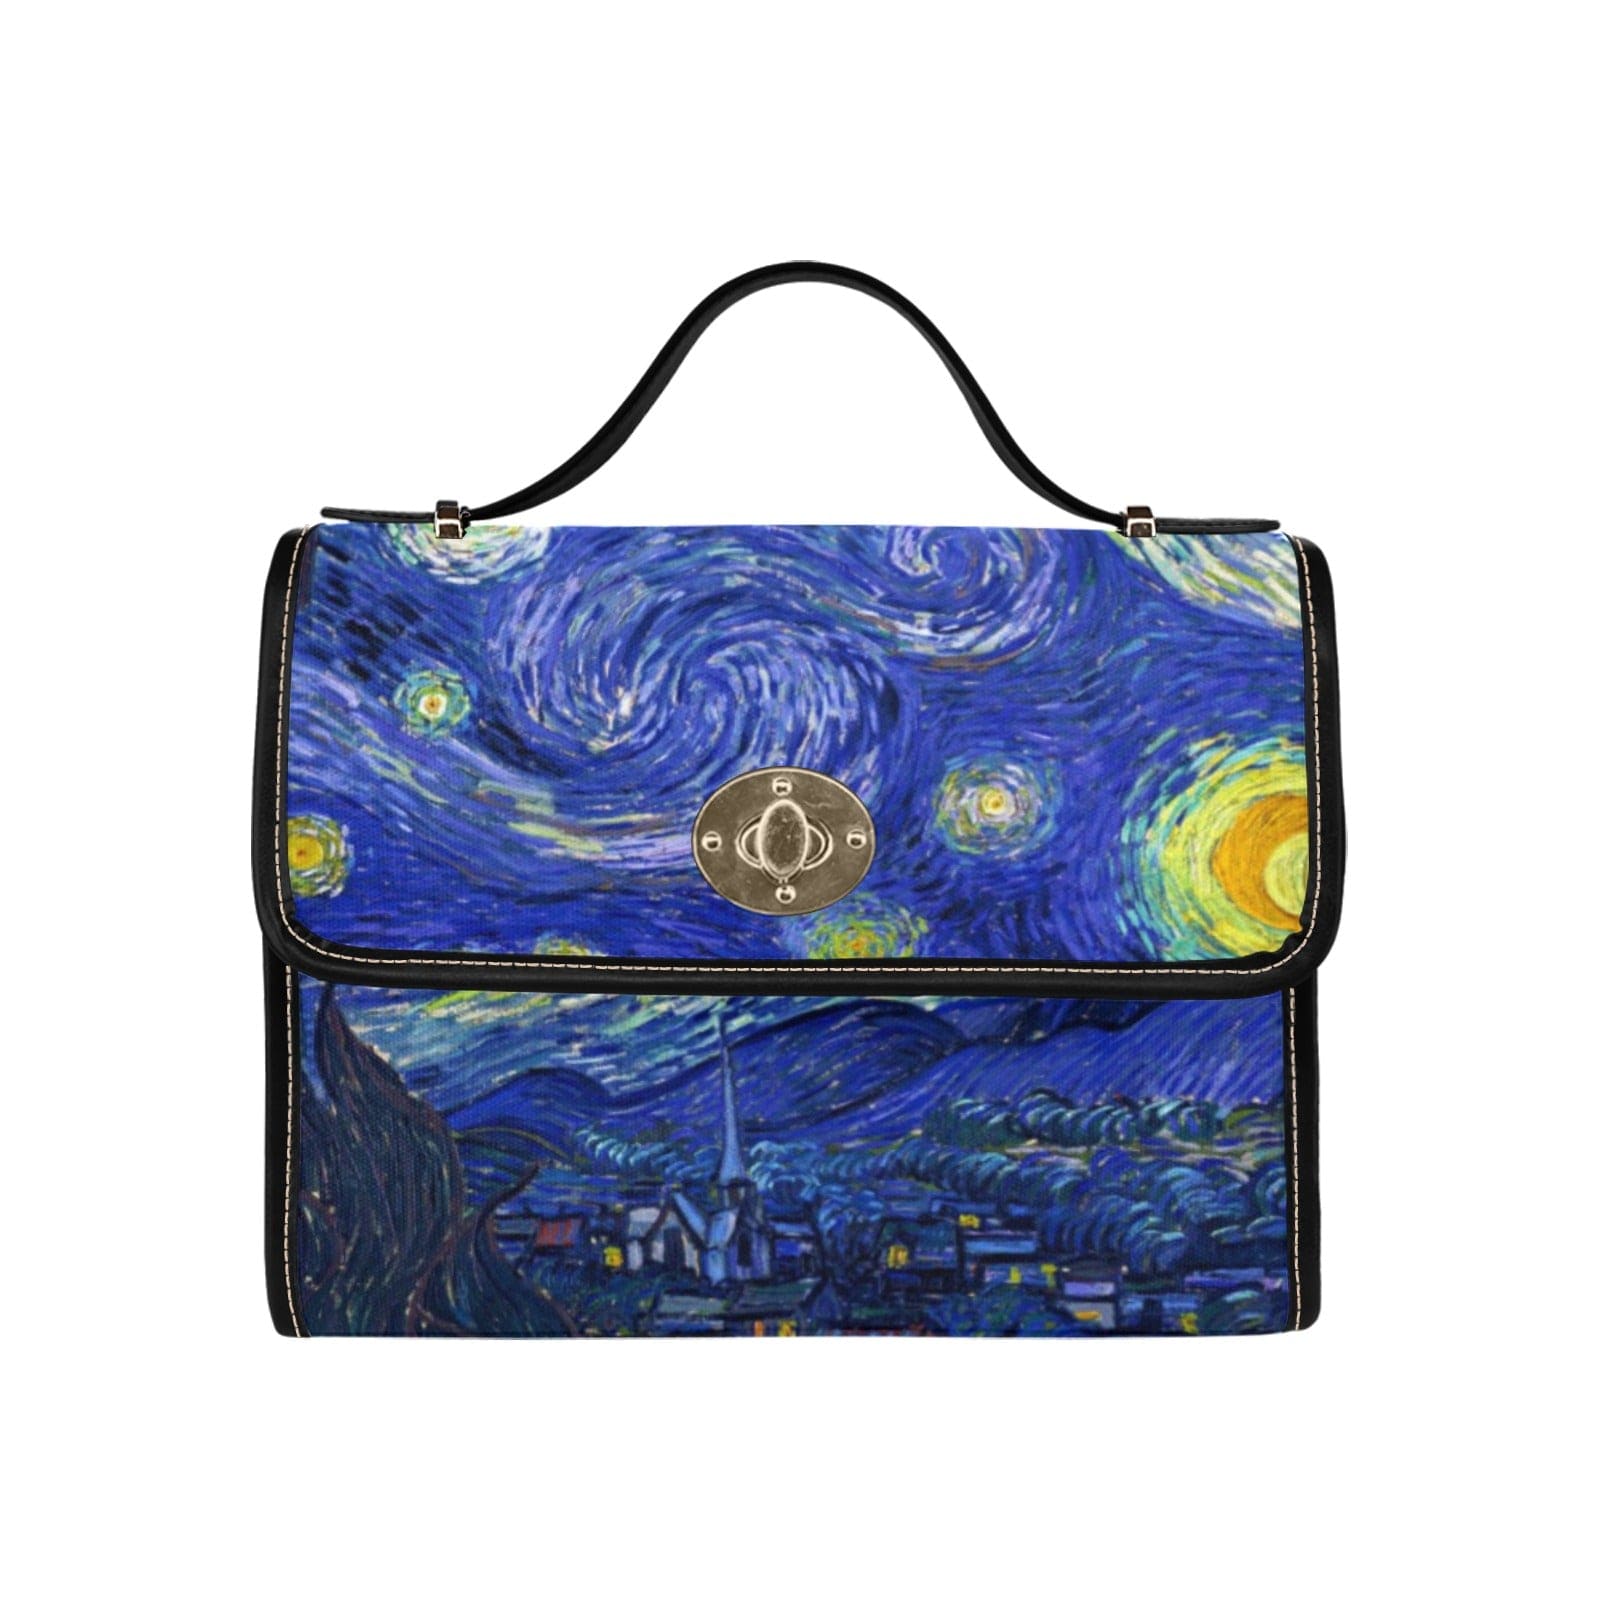 blue Starry Night satchel handbag at Gallery Serpentine